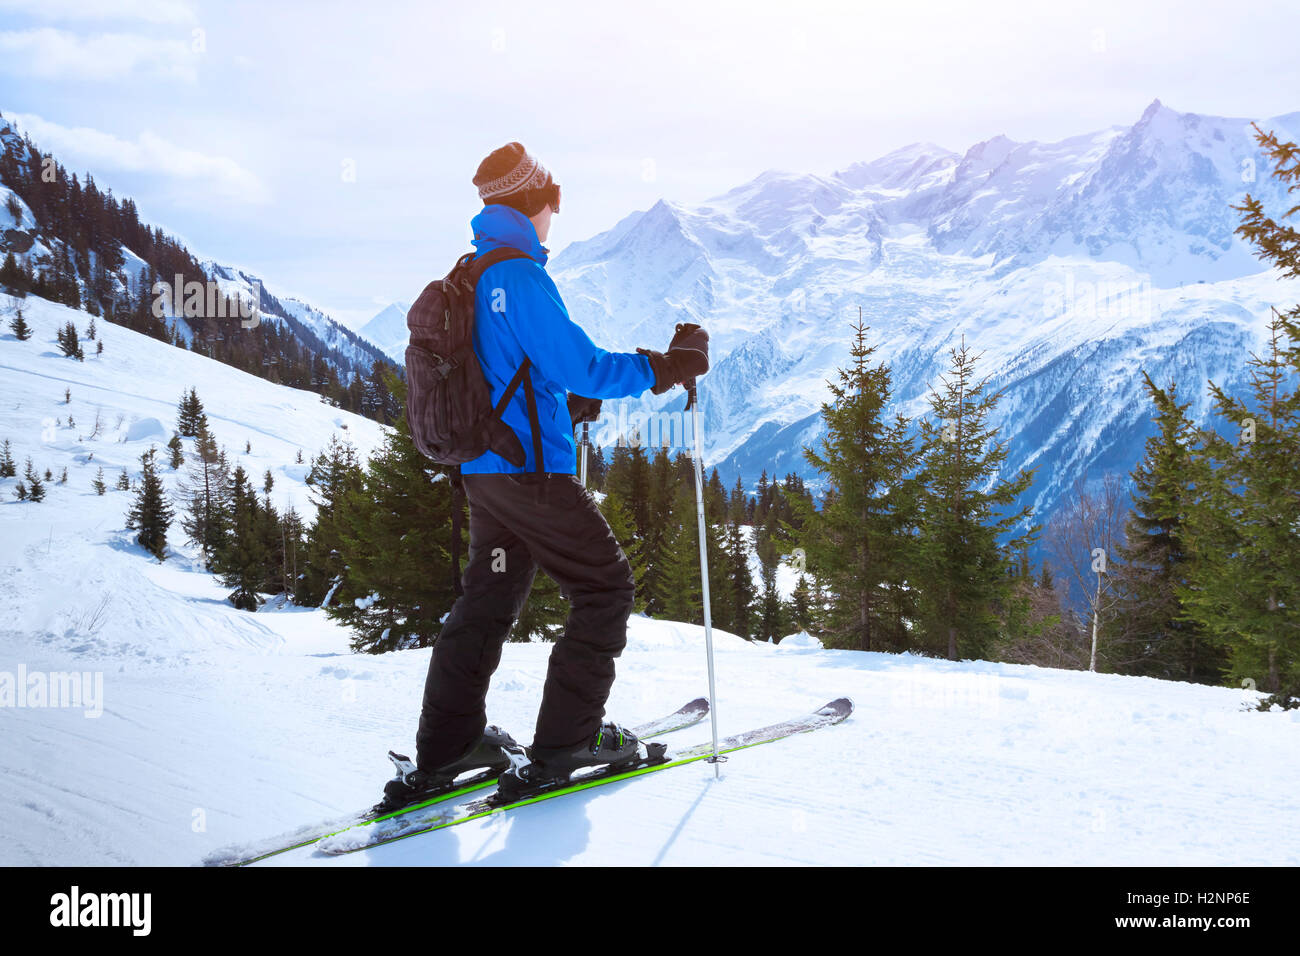 Bénéficiant d'une vue magnifique de ski alpes près de Chamonix, France Banque D'Images